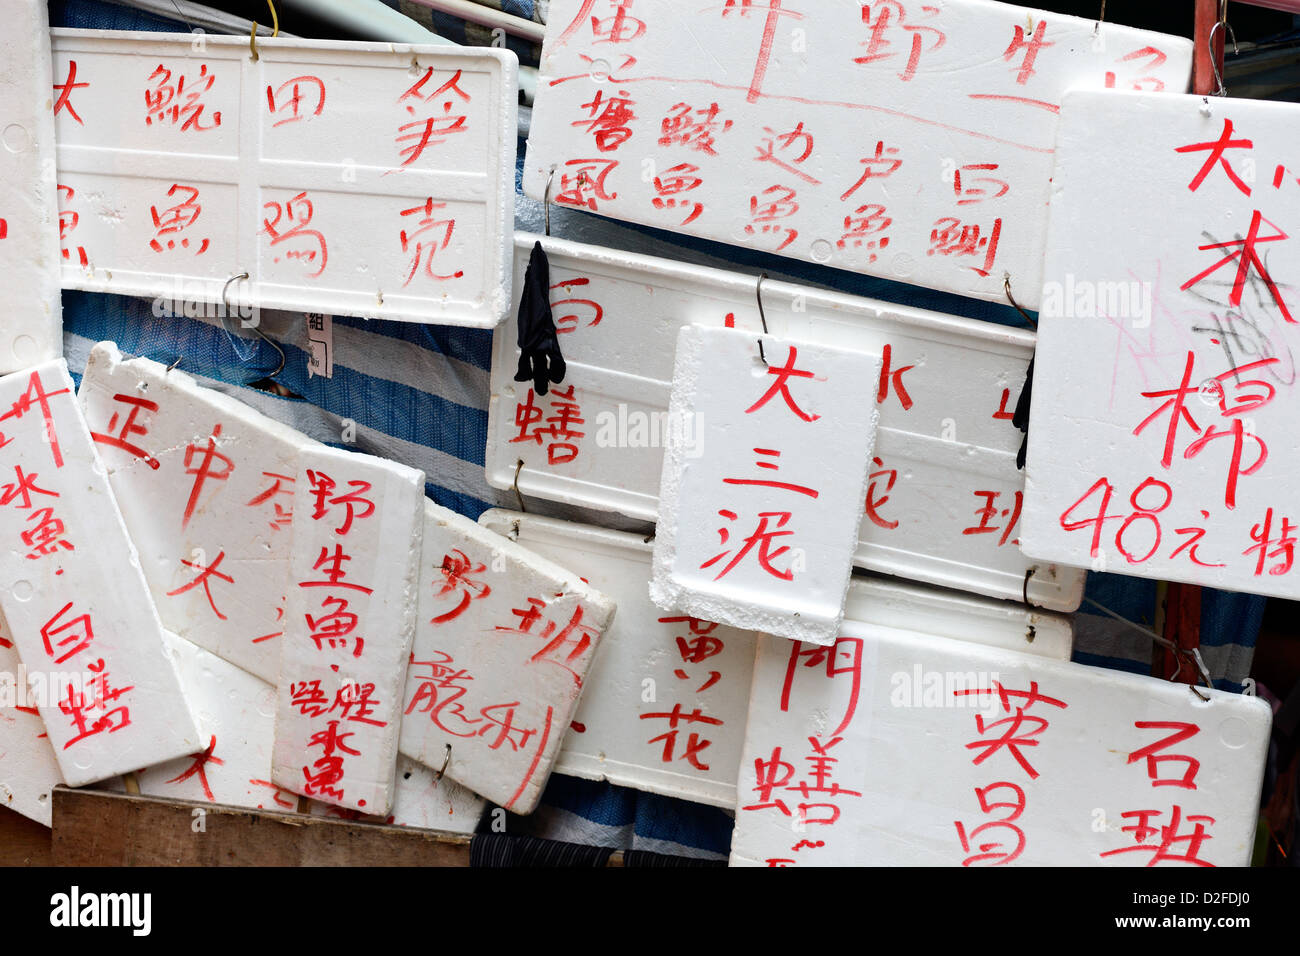 Hong Kong, Chine, les caractères chinois écrit sur les plaques de polystyrène Banque D'Images